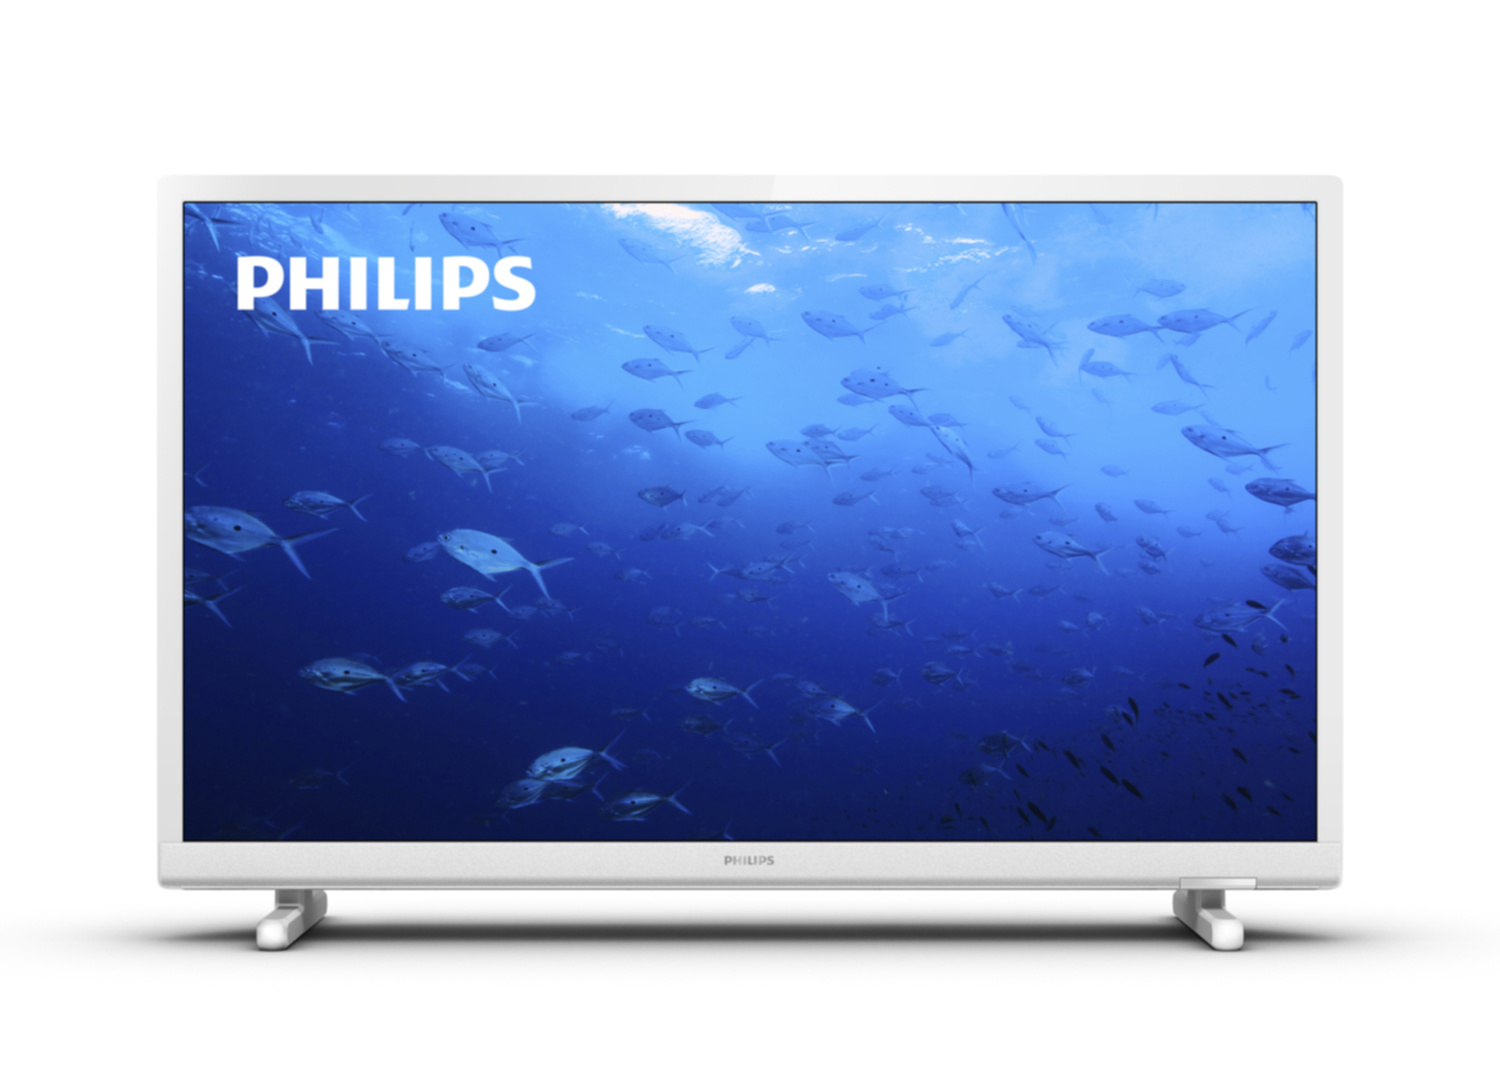 Philips - TV LED HD 24 24PHS5537/12 - WHITE